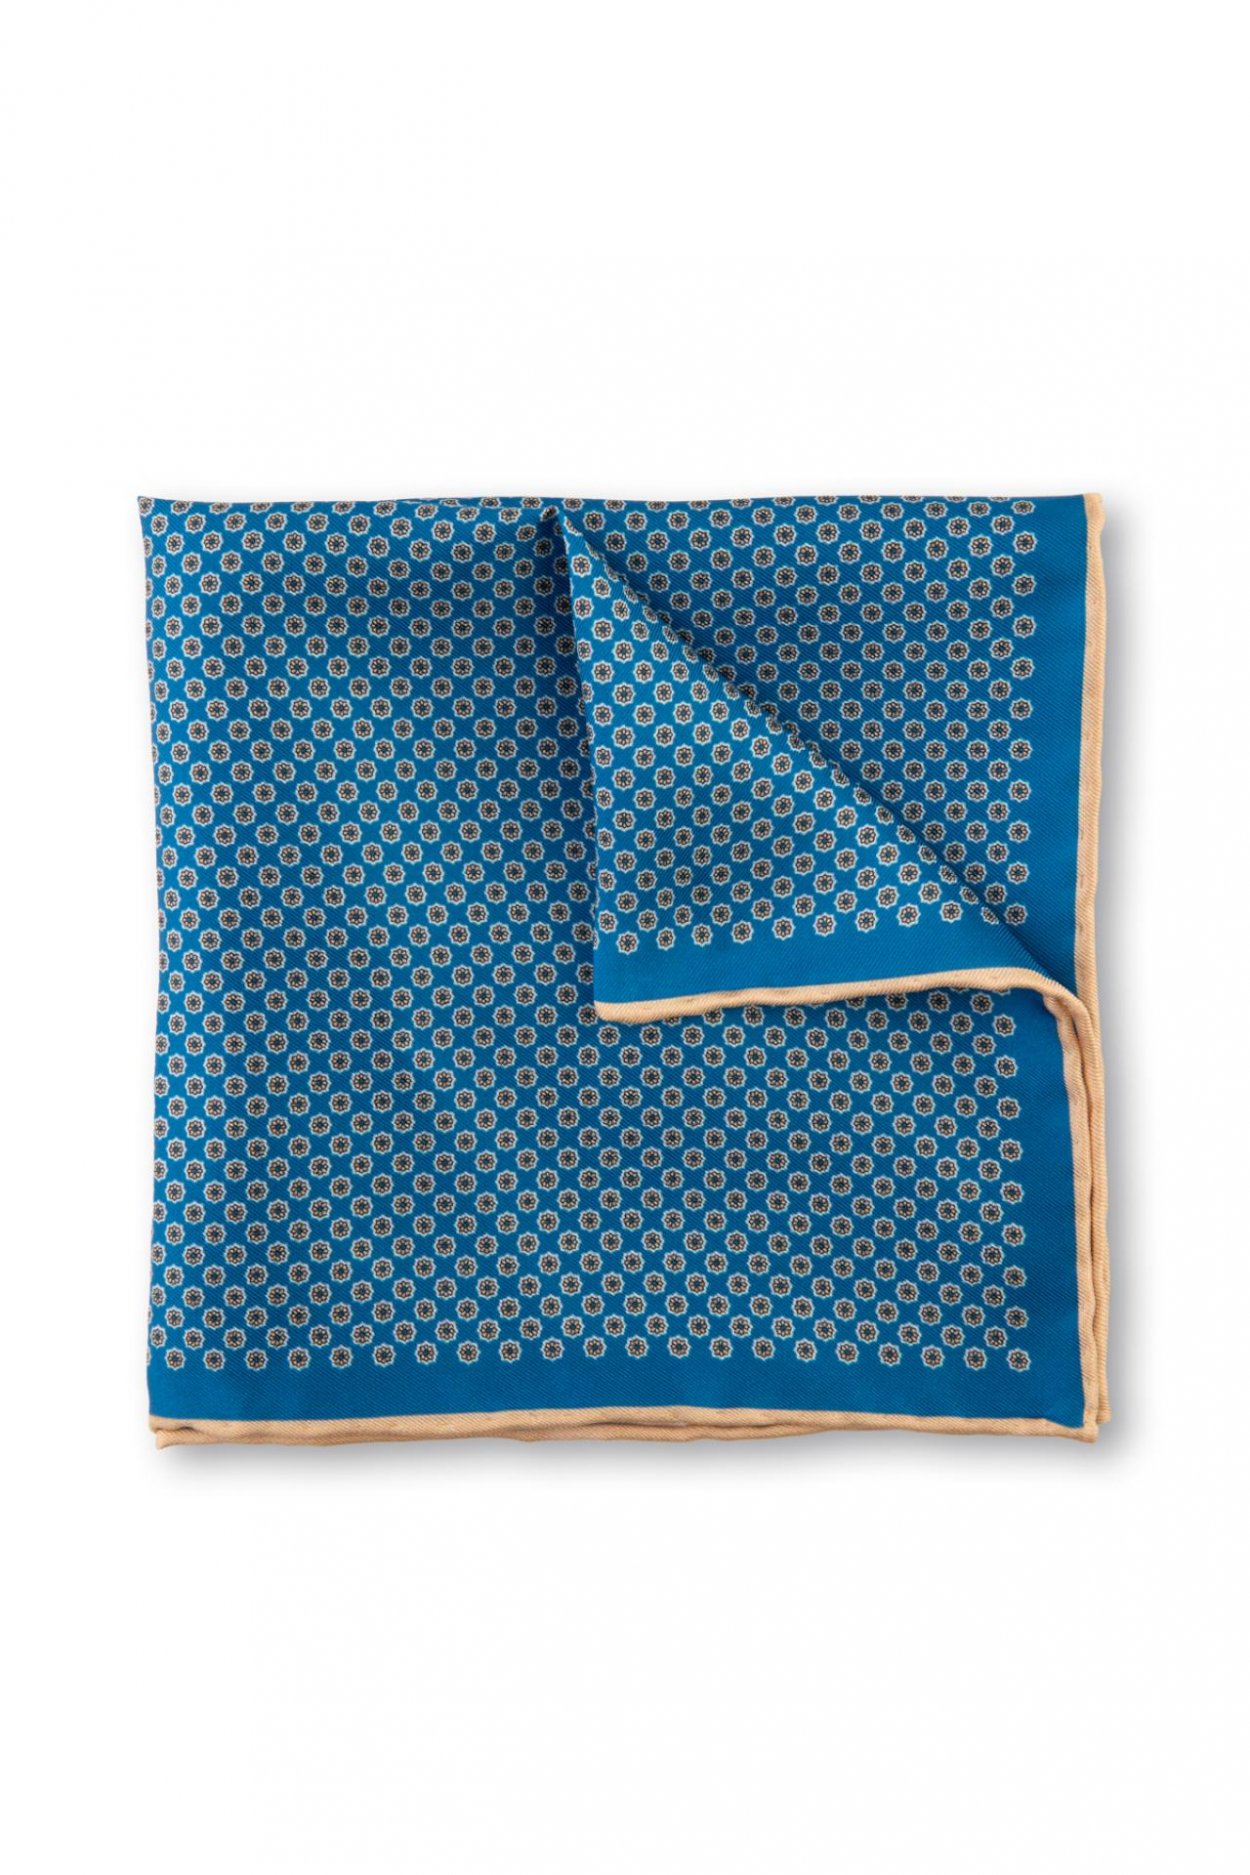 Modrý hedvábný kapesníček se vzorem